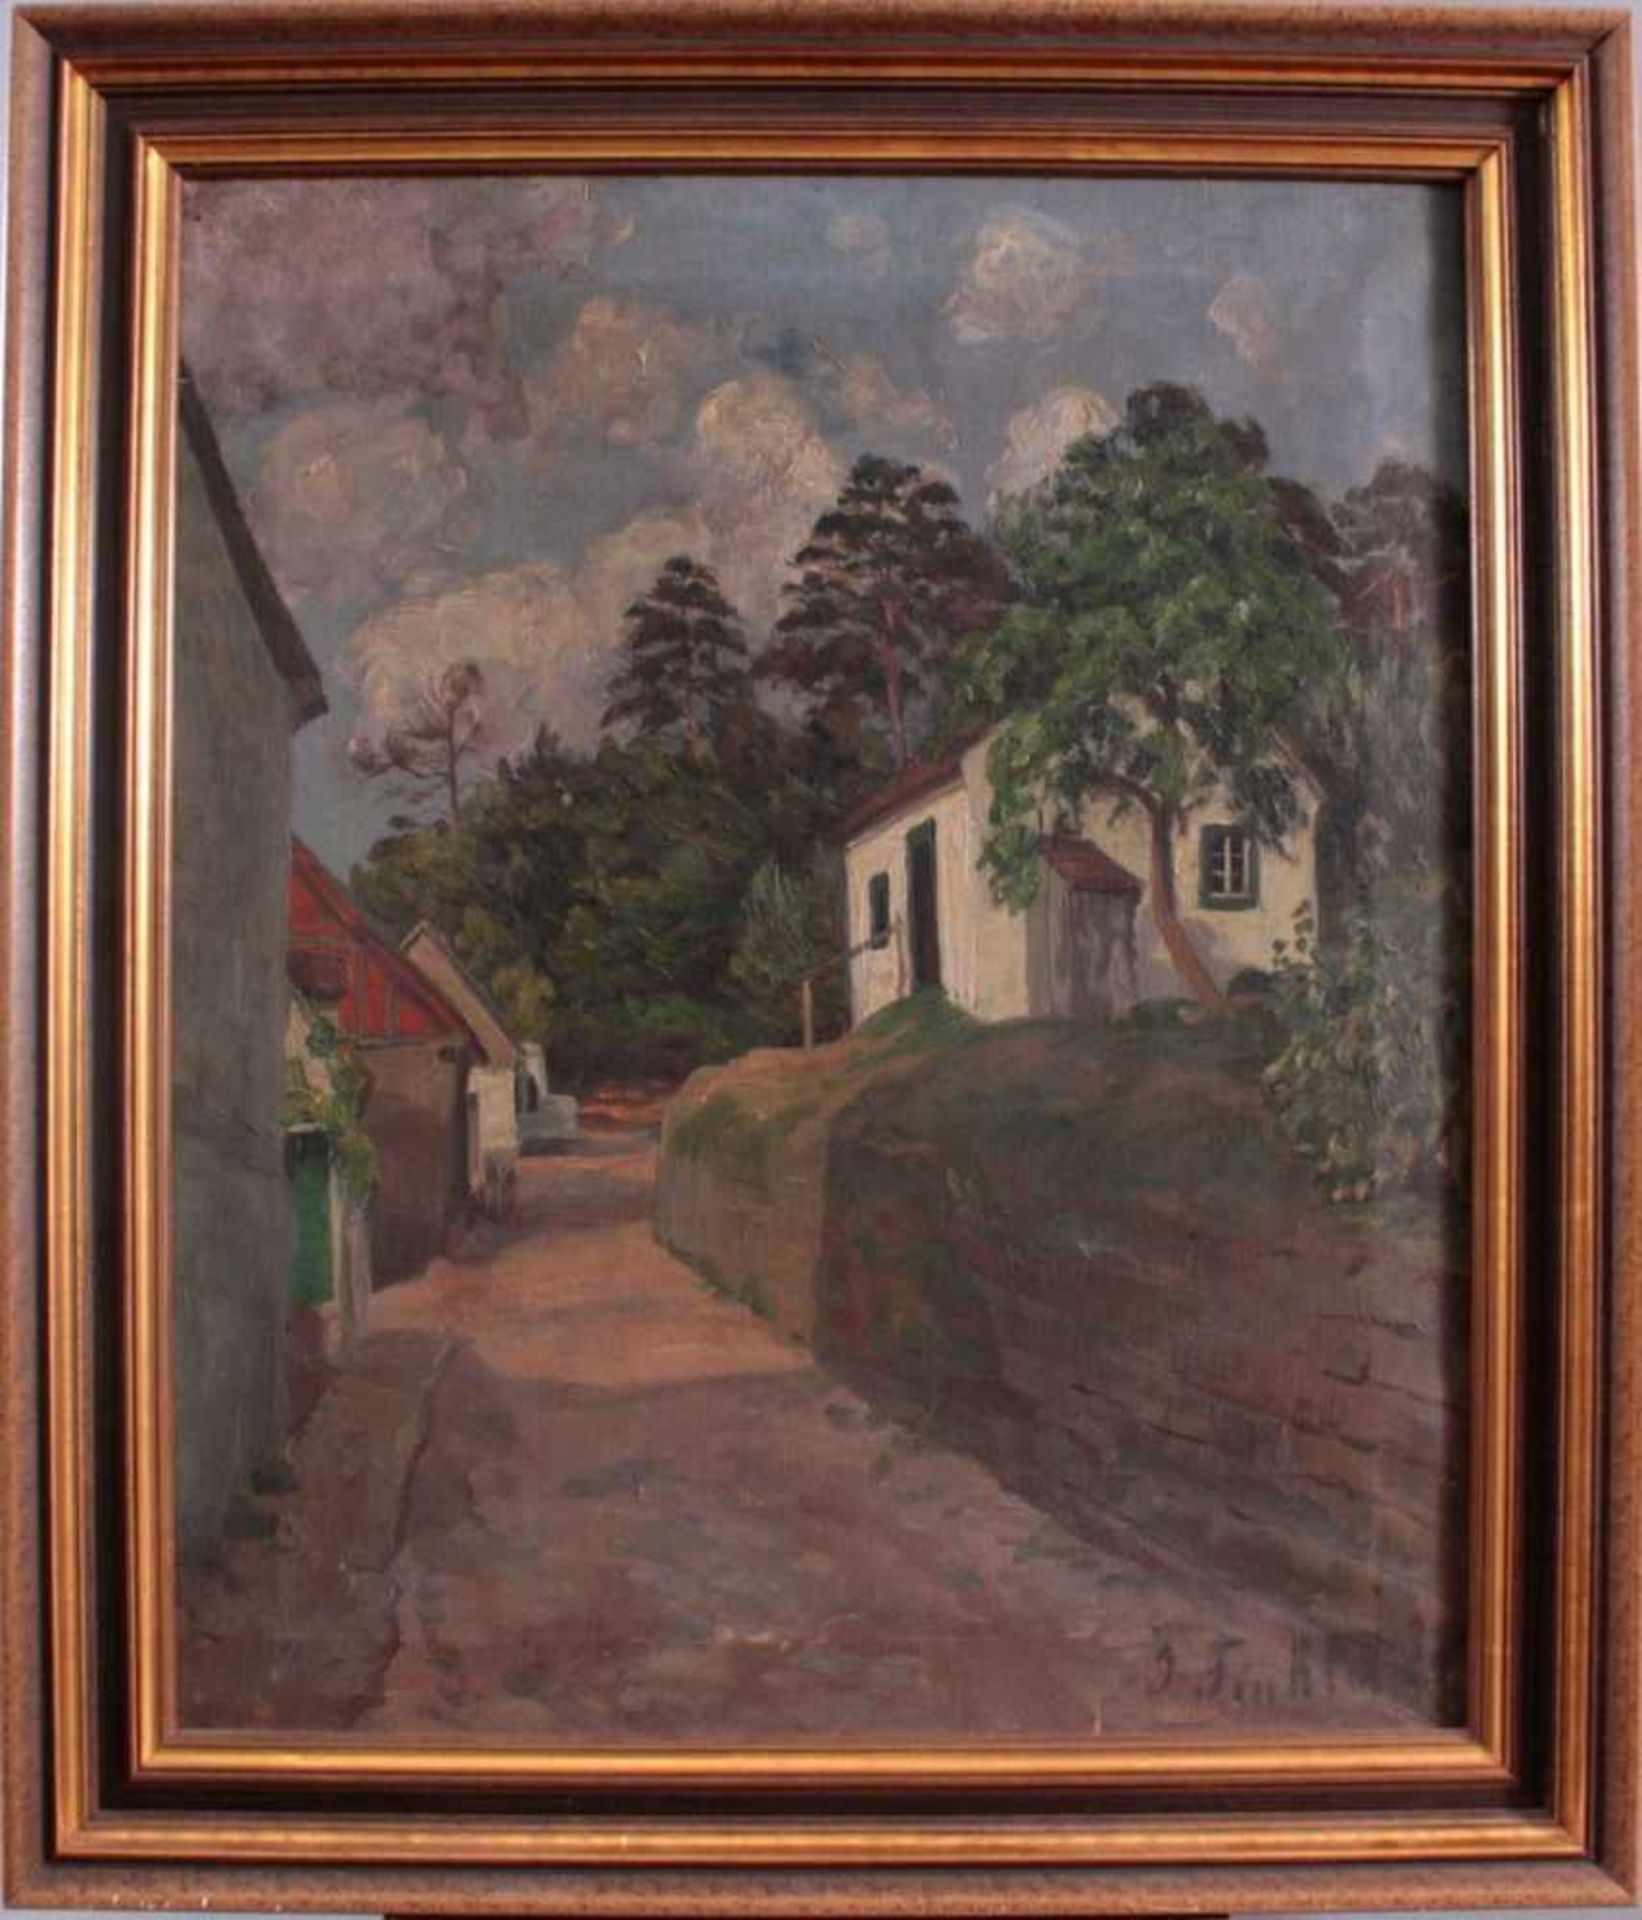 GemäldeÖl auf Leinwand, "Landschaft mit Gebäuden", rechts untenundeutlich signiert, ca. 59 x 48,5